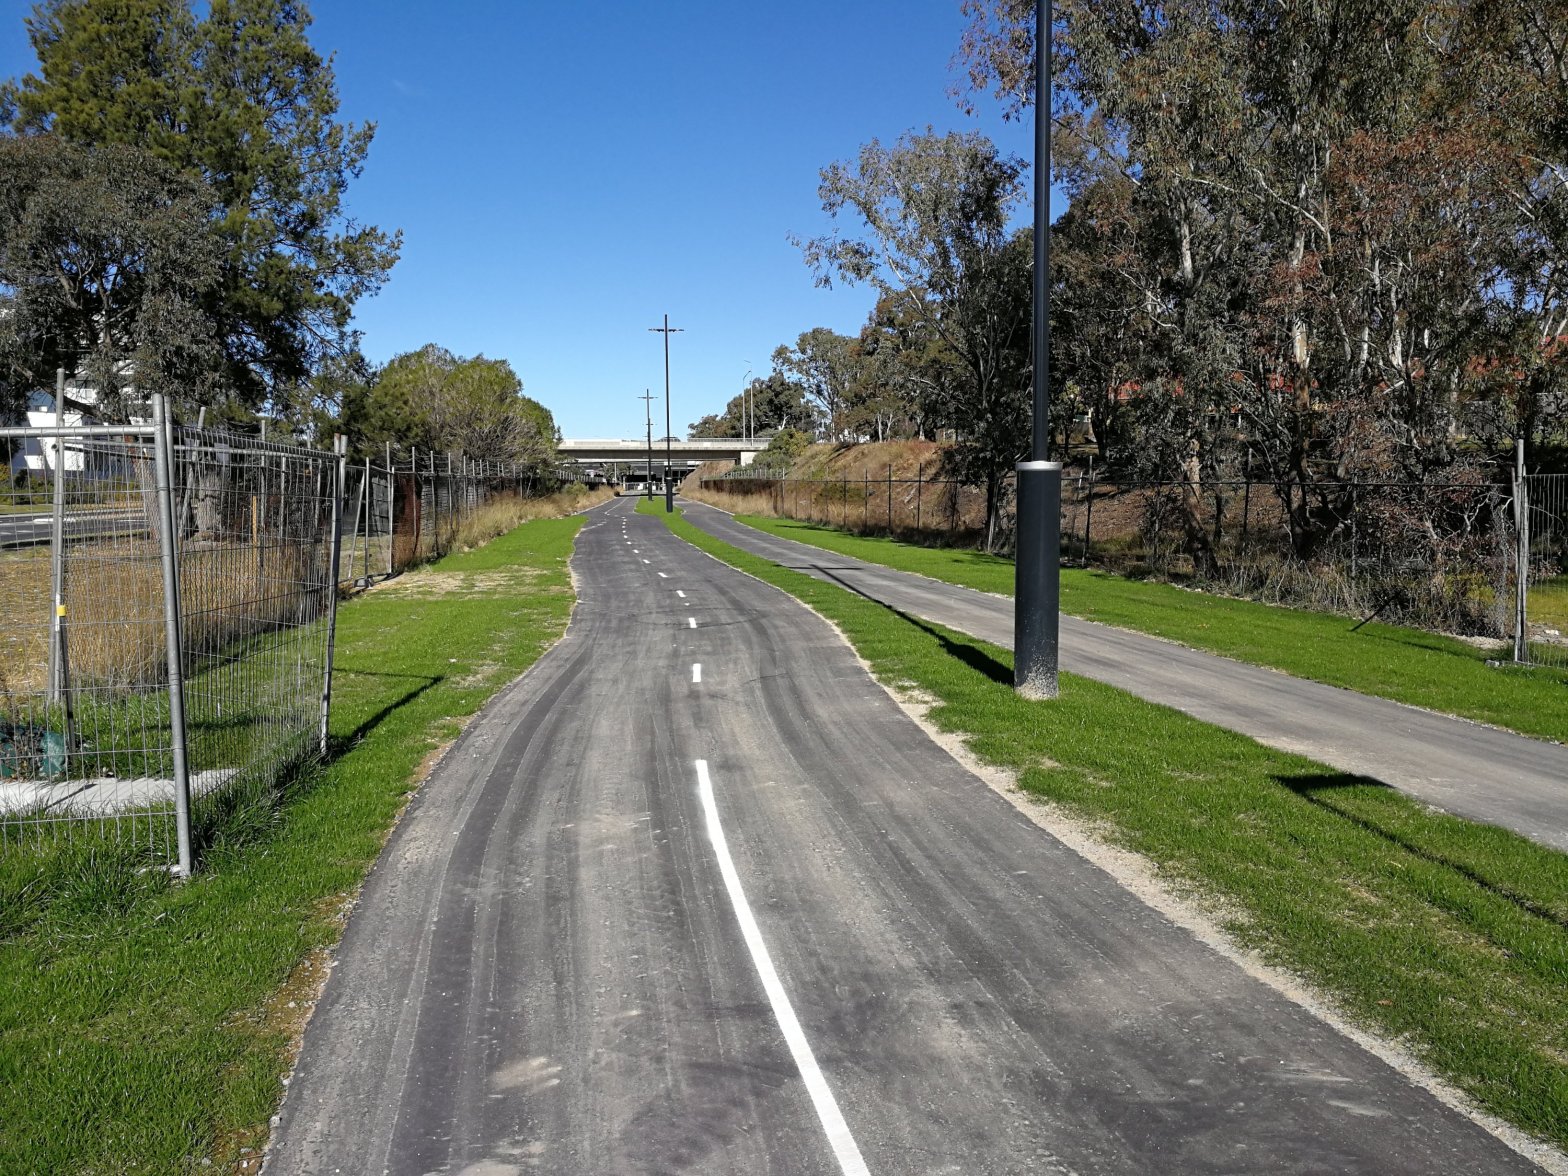 Main Community Route (MCR), Belconnen Bikeway, Belconnen, Canberra